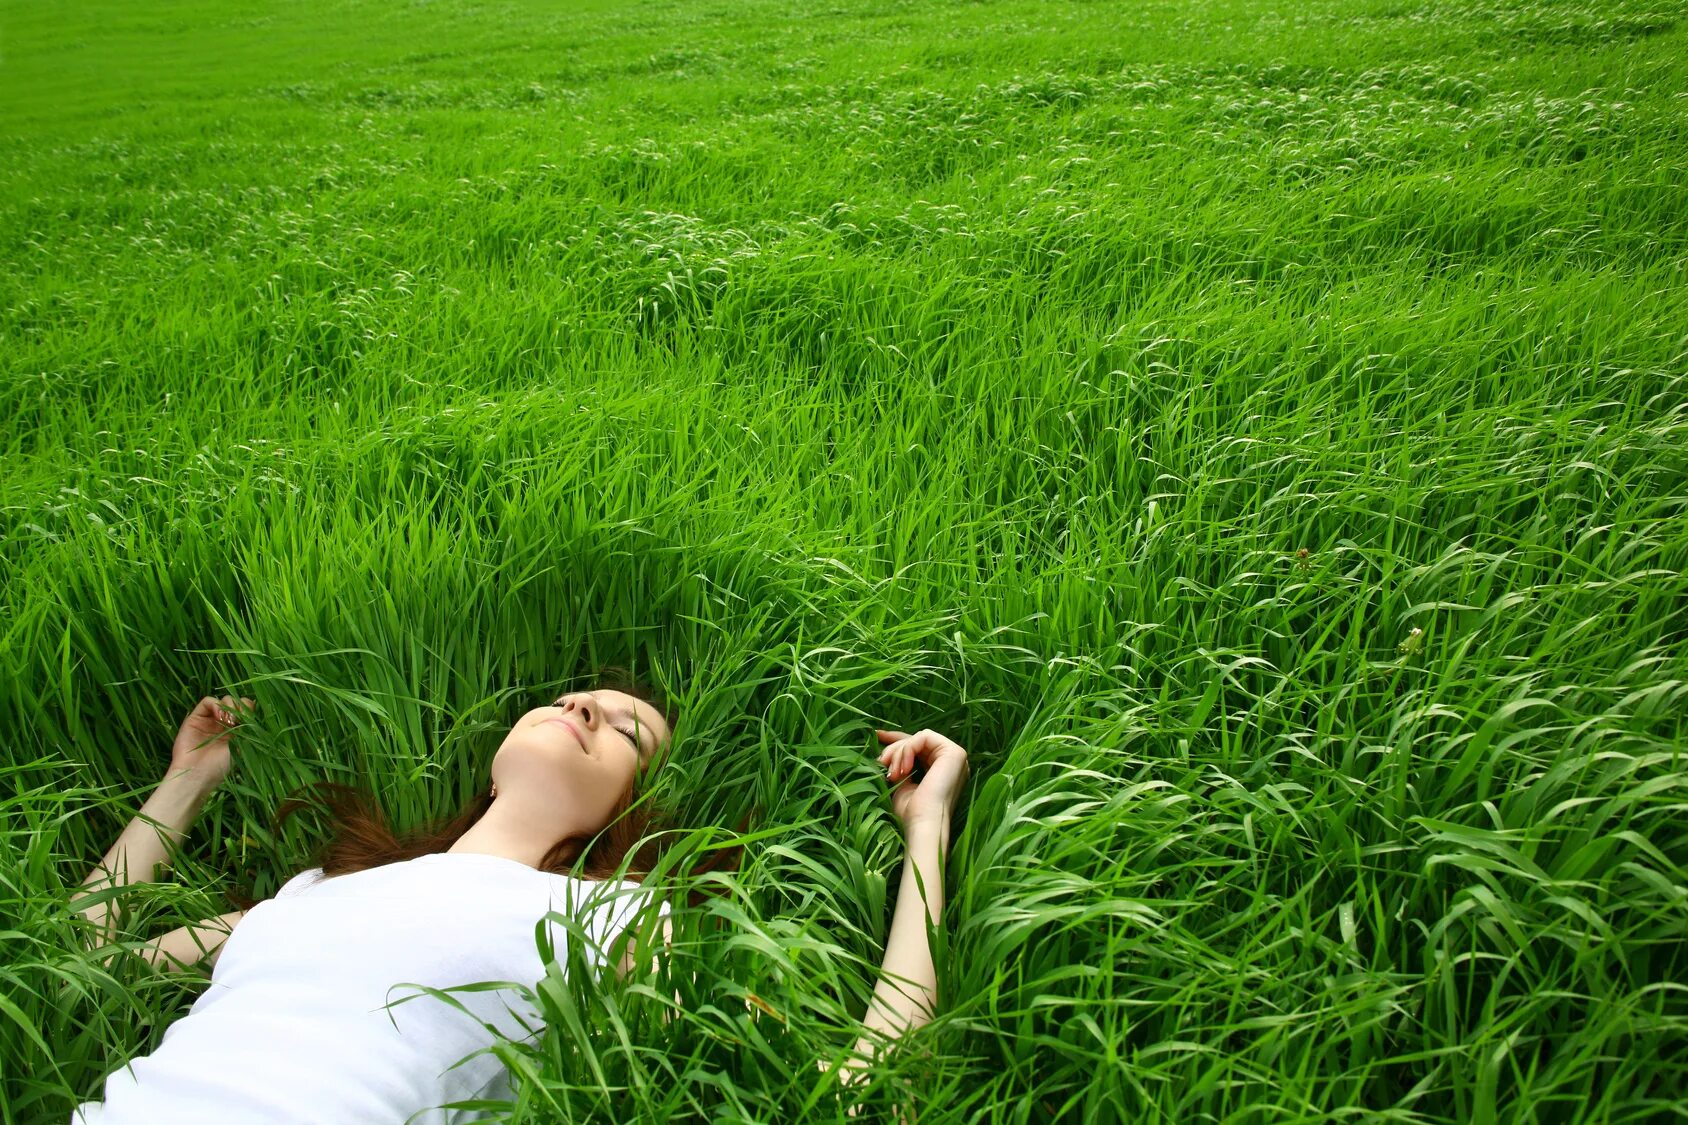 Релакс для нервов и души. Девушка в траве. Лежит на траве. Человек лежит на траве. Расслабление на природе.